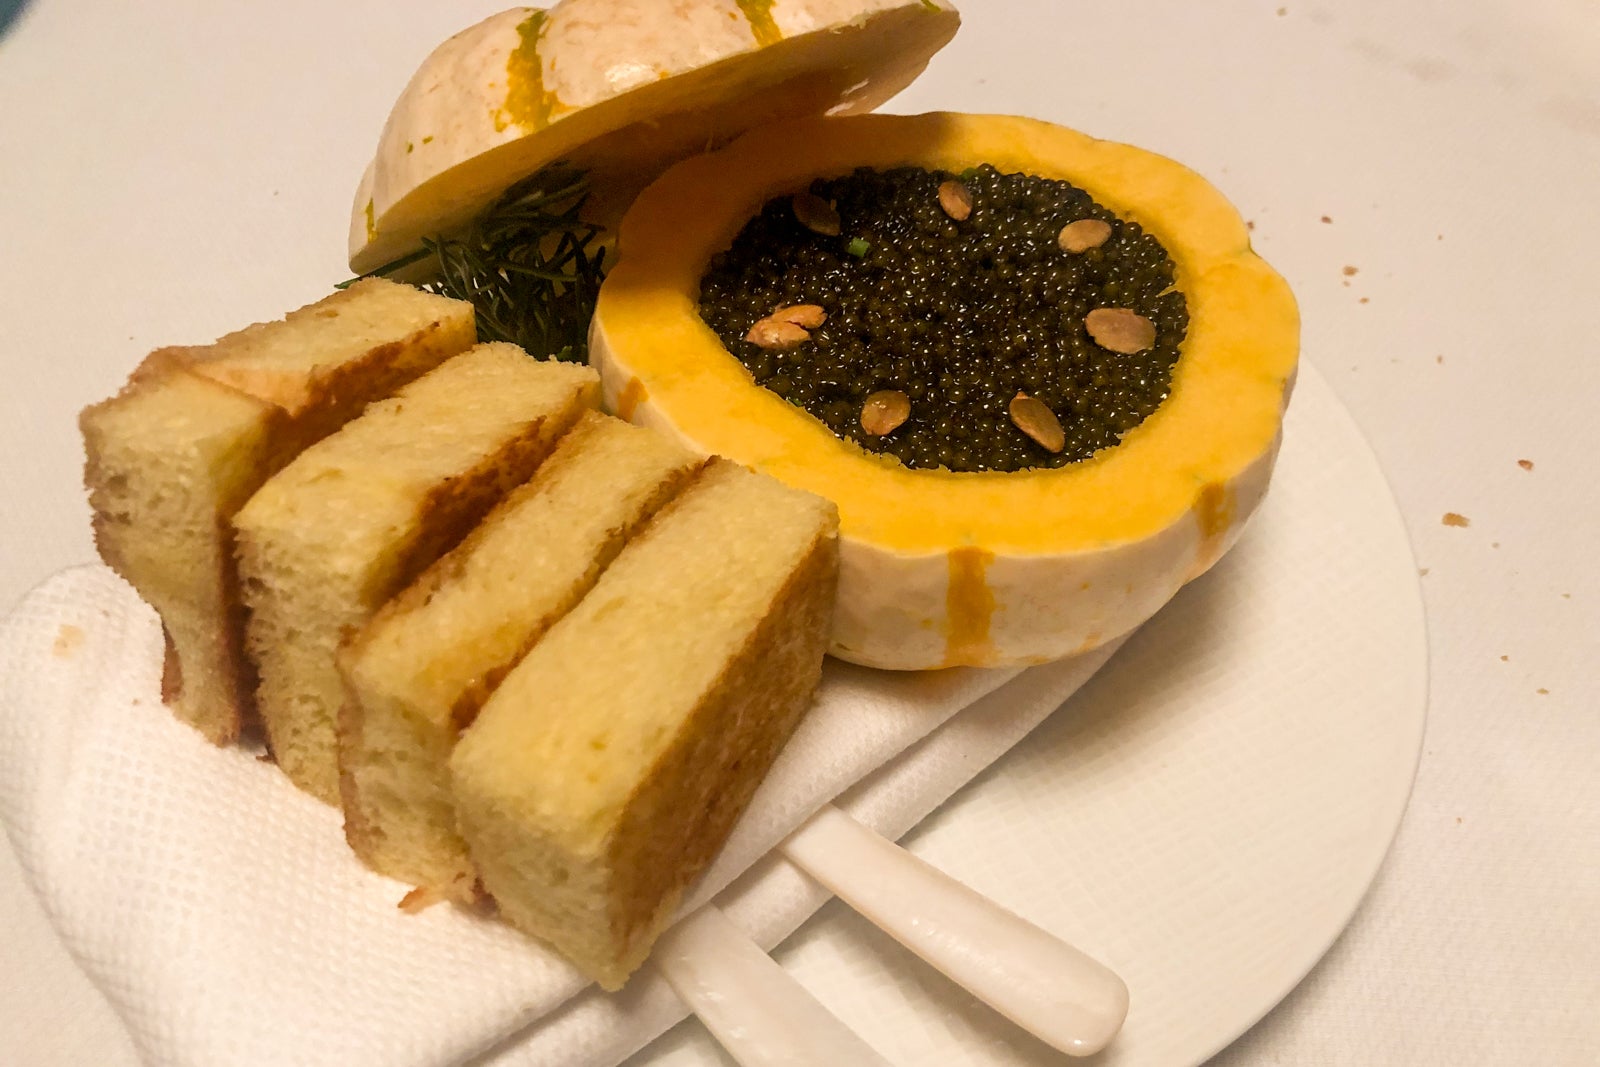 Kaluga caviar in a small white pumpkin with toasted brioche bread.